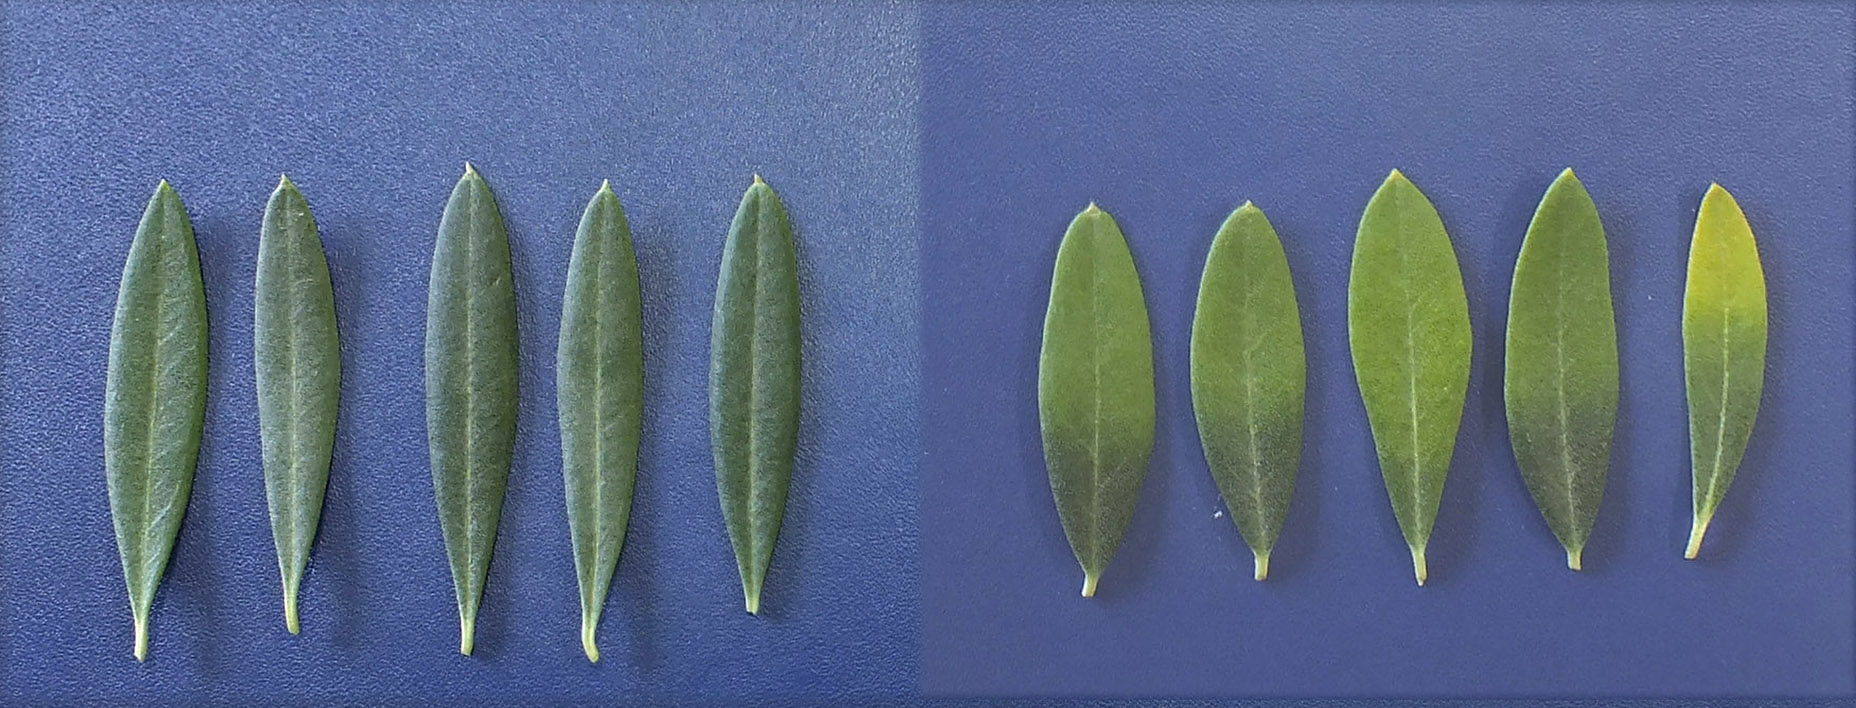 Sintomatologa en hoja de olivo con deficiencia en Ca. Derecha hojas con deficiencia en Ca. Izquierda hojas de olivos testigo (sin deficiencia)...